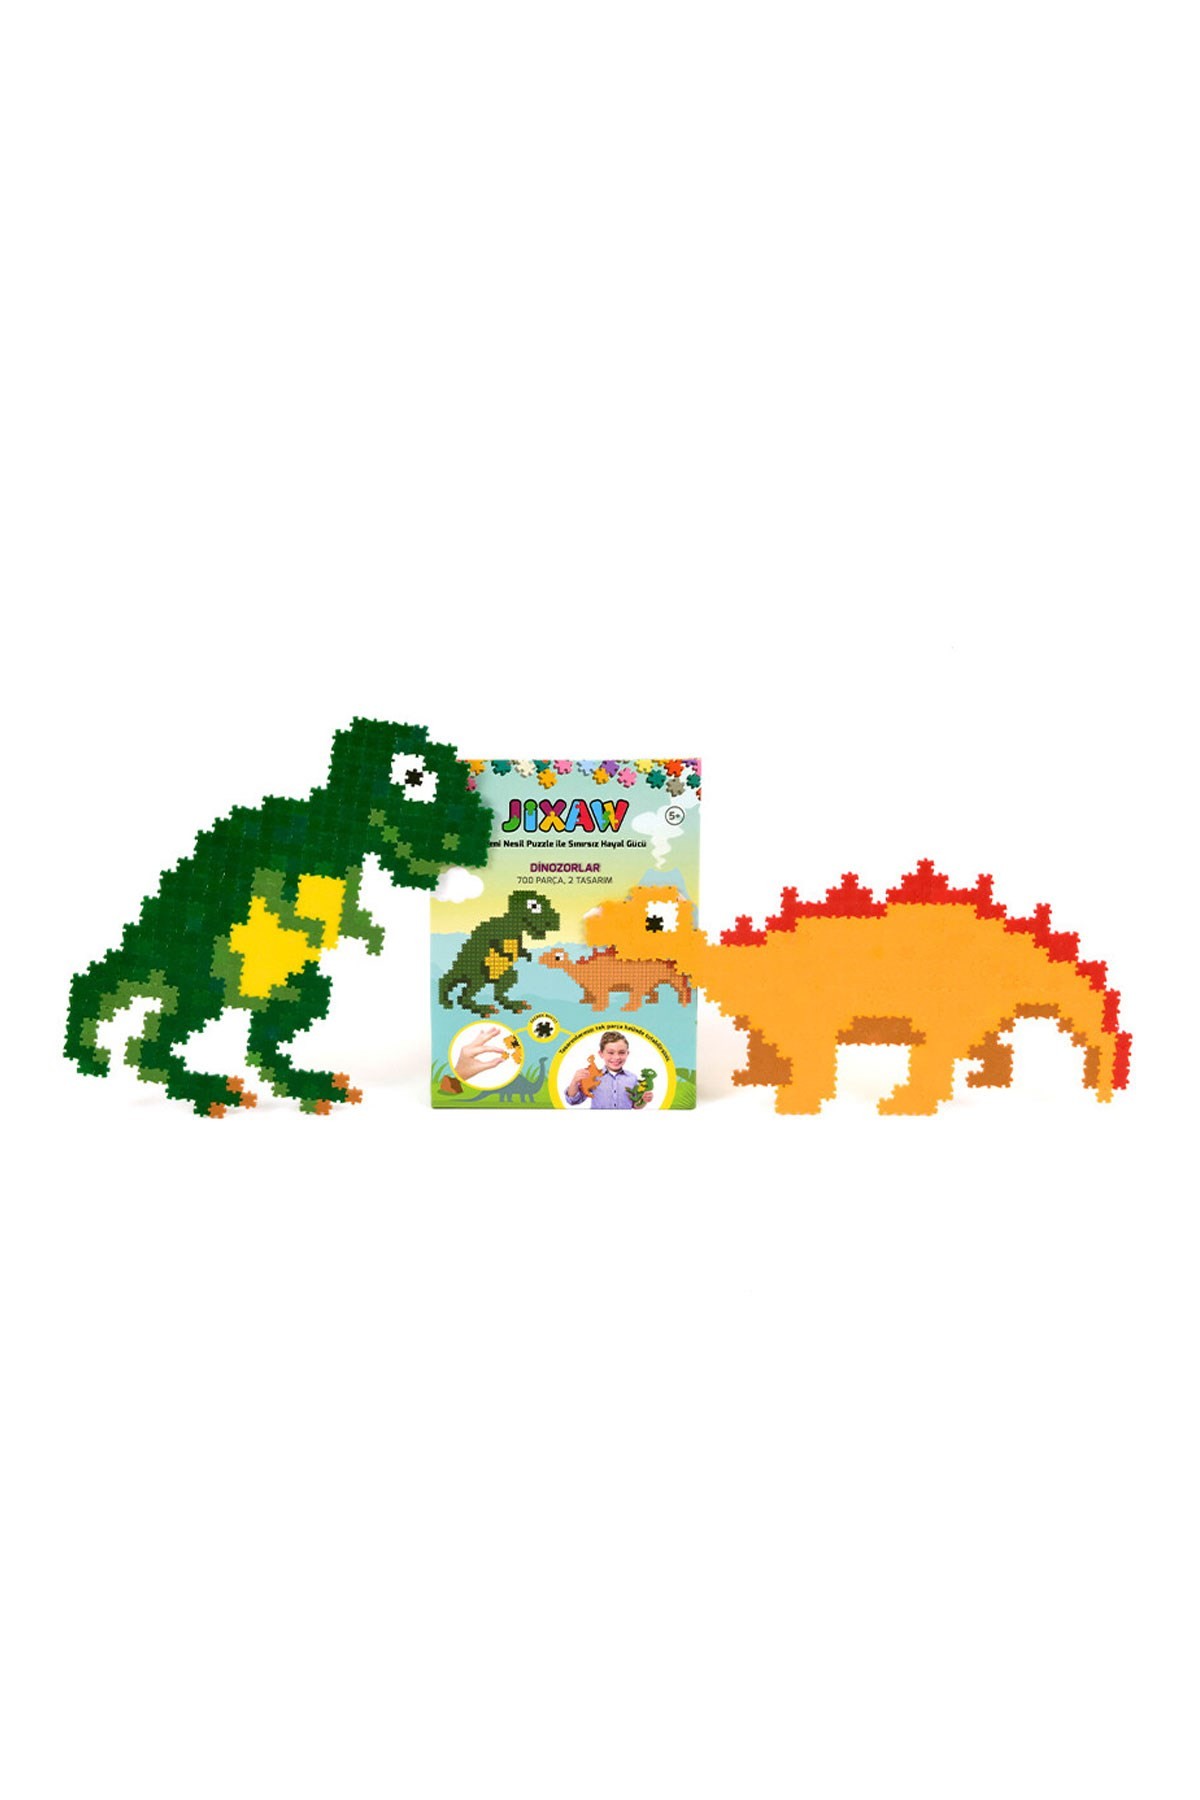 Jixaw Dinozorlar Puzzle 700 Parça